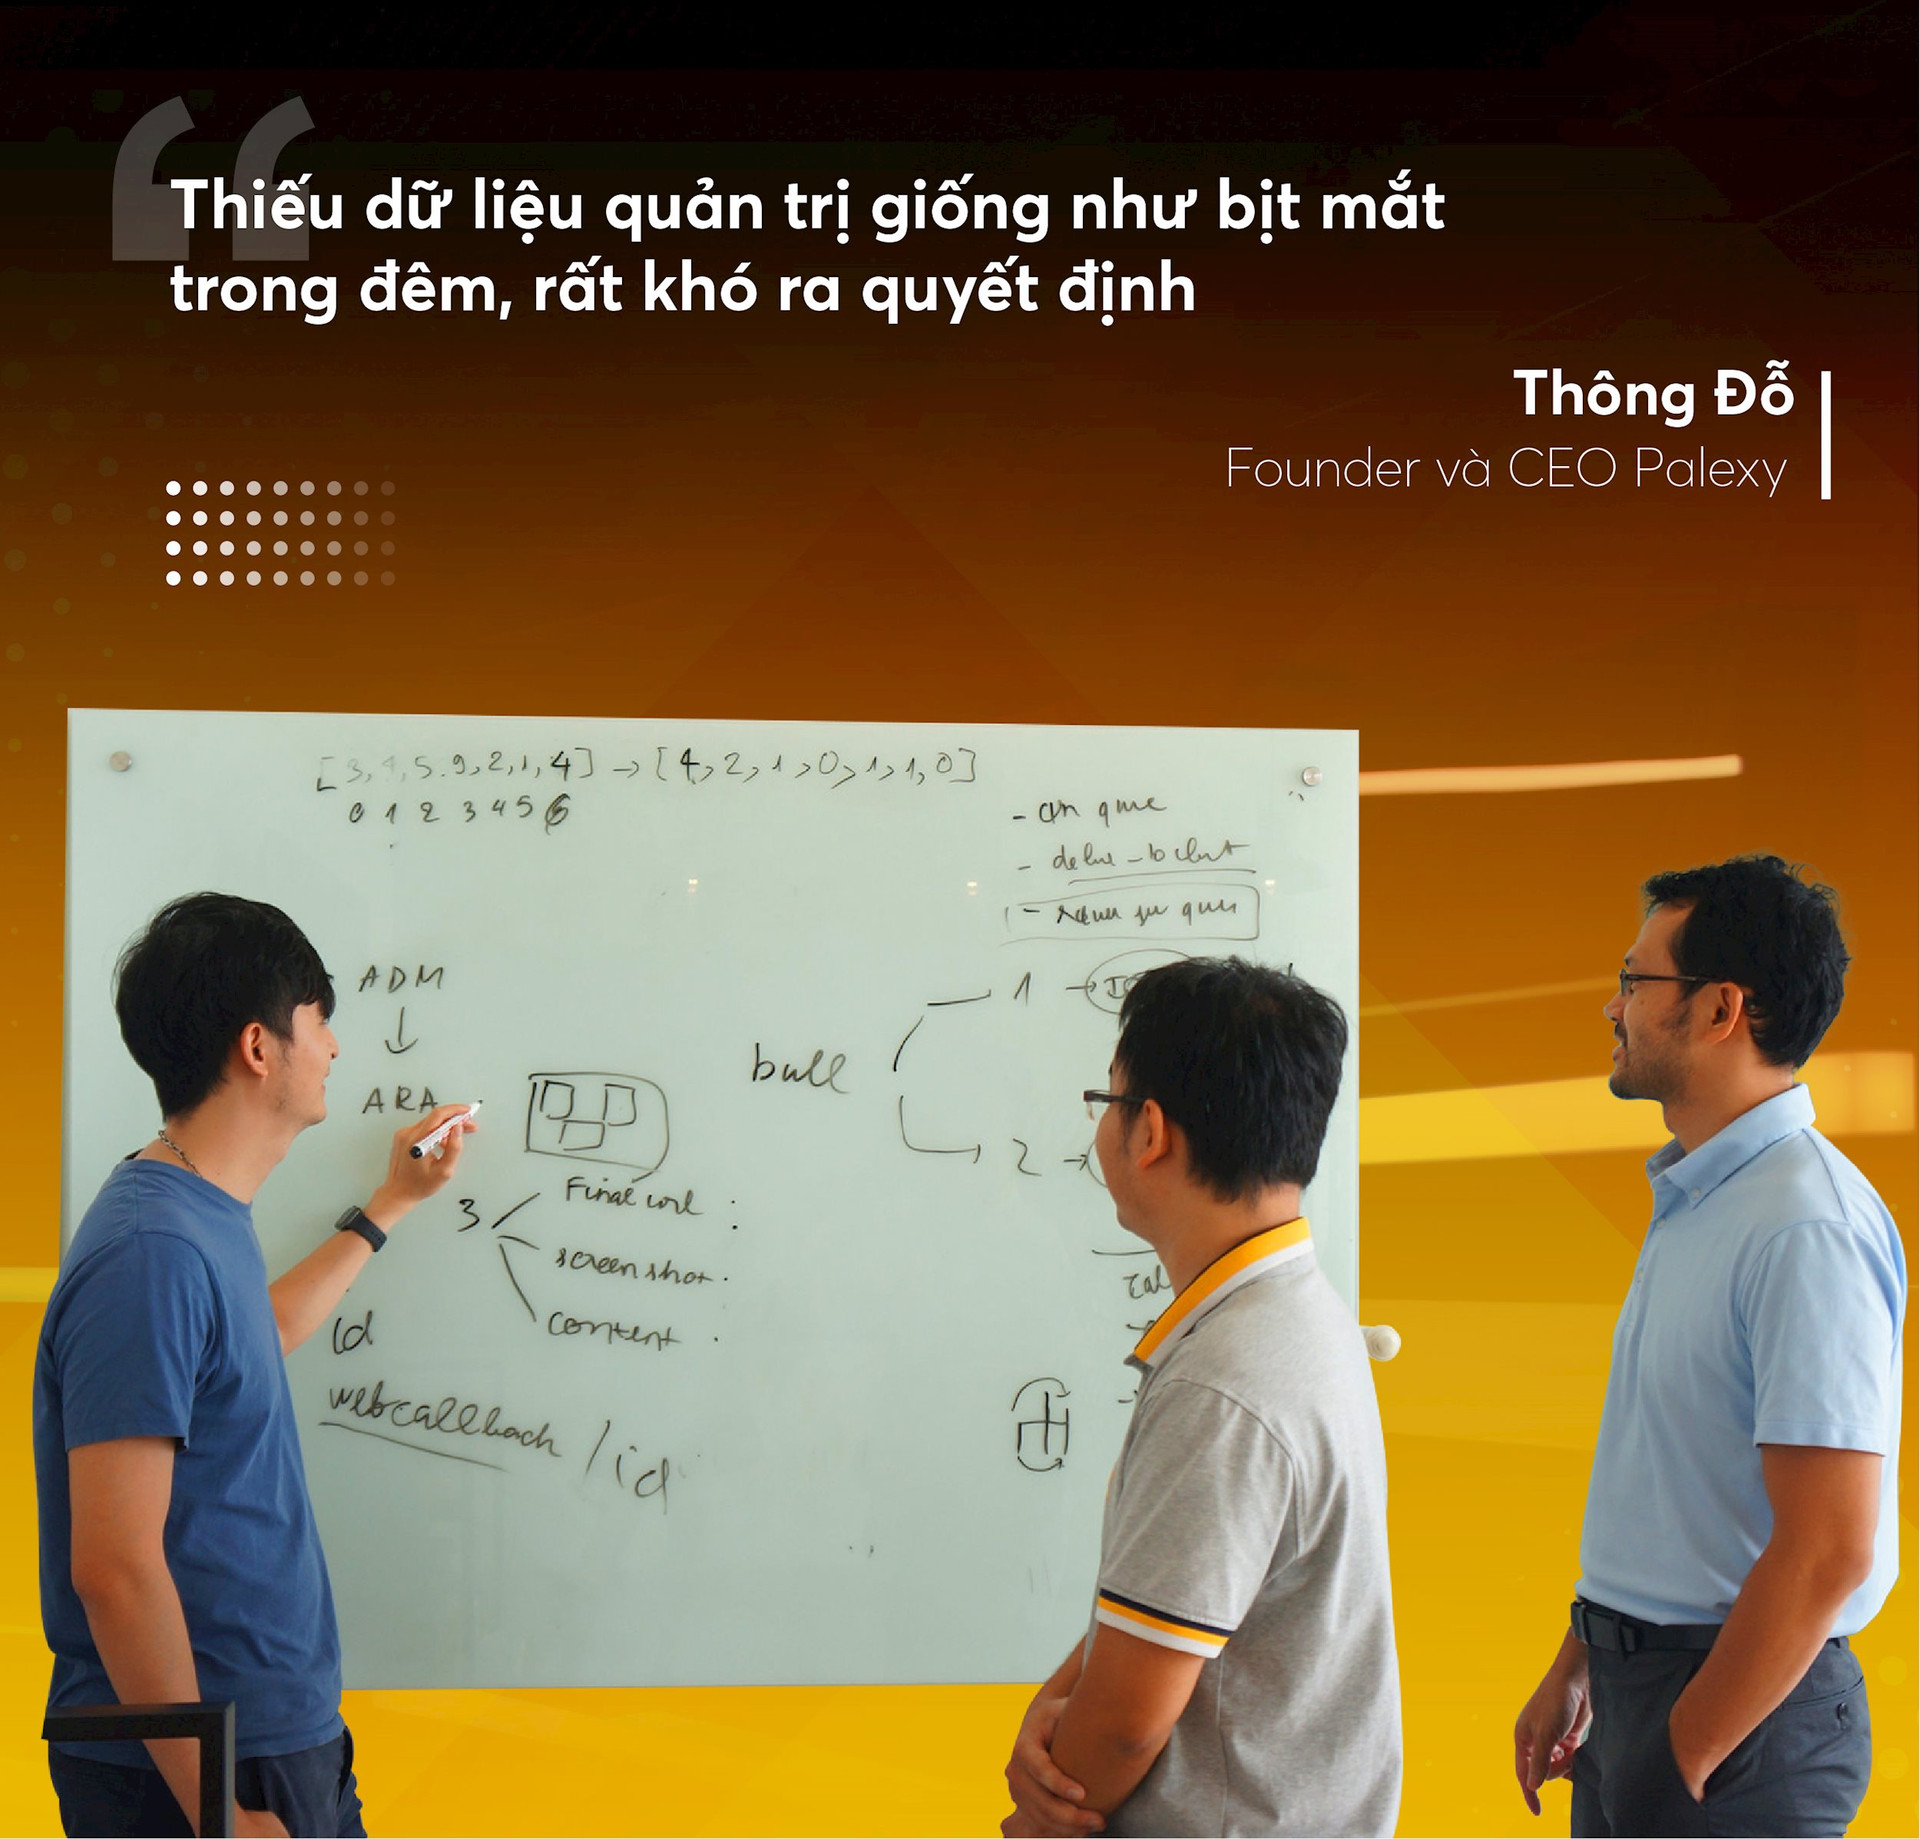 Tiến sĩ AI đưa công nghệ “mắt thần” vào ngành bán lẻ, tích hợp trong 2/3 chuỗi lớn nhất Việt Nam, mở rộng ra 6 nước Đông Nam Á - Ảnh 6.